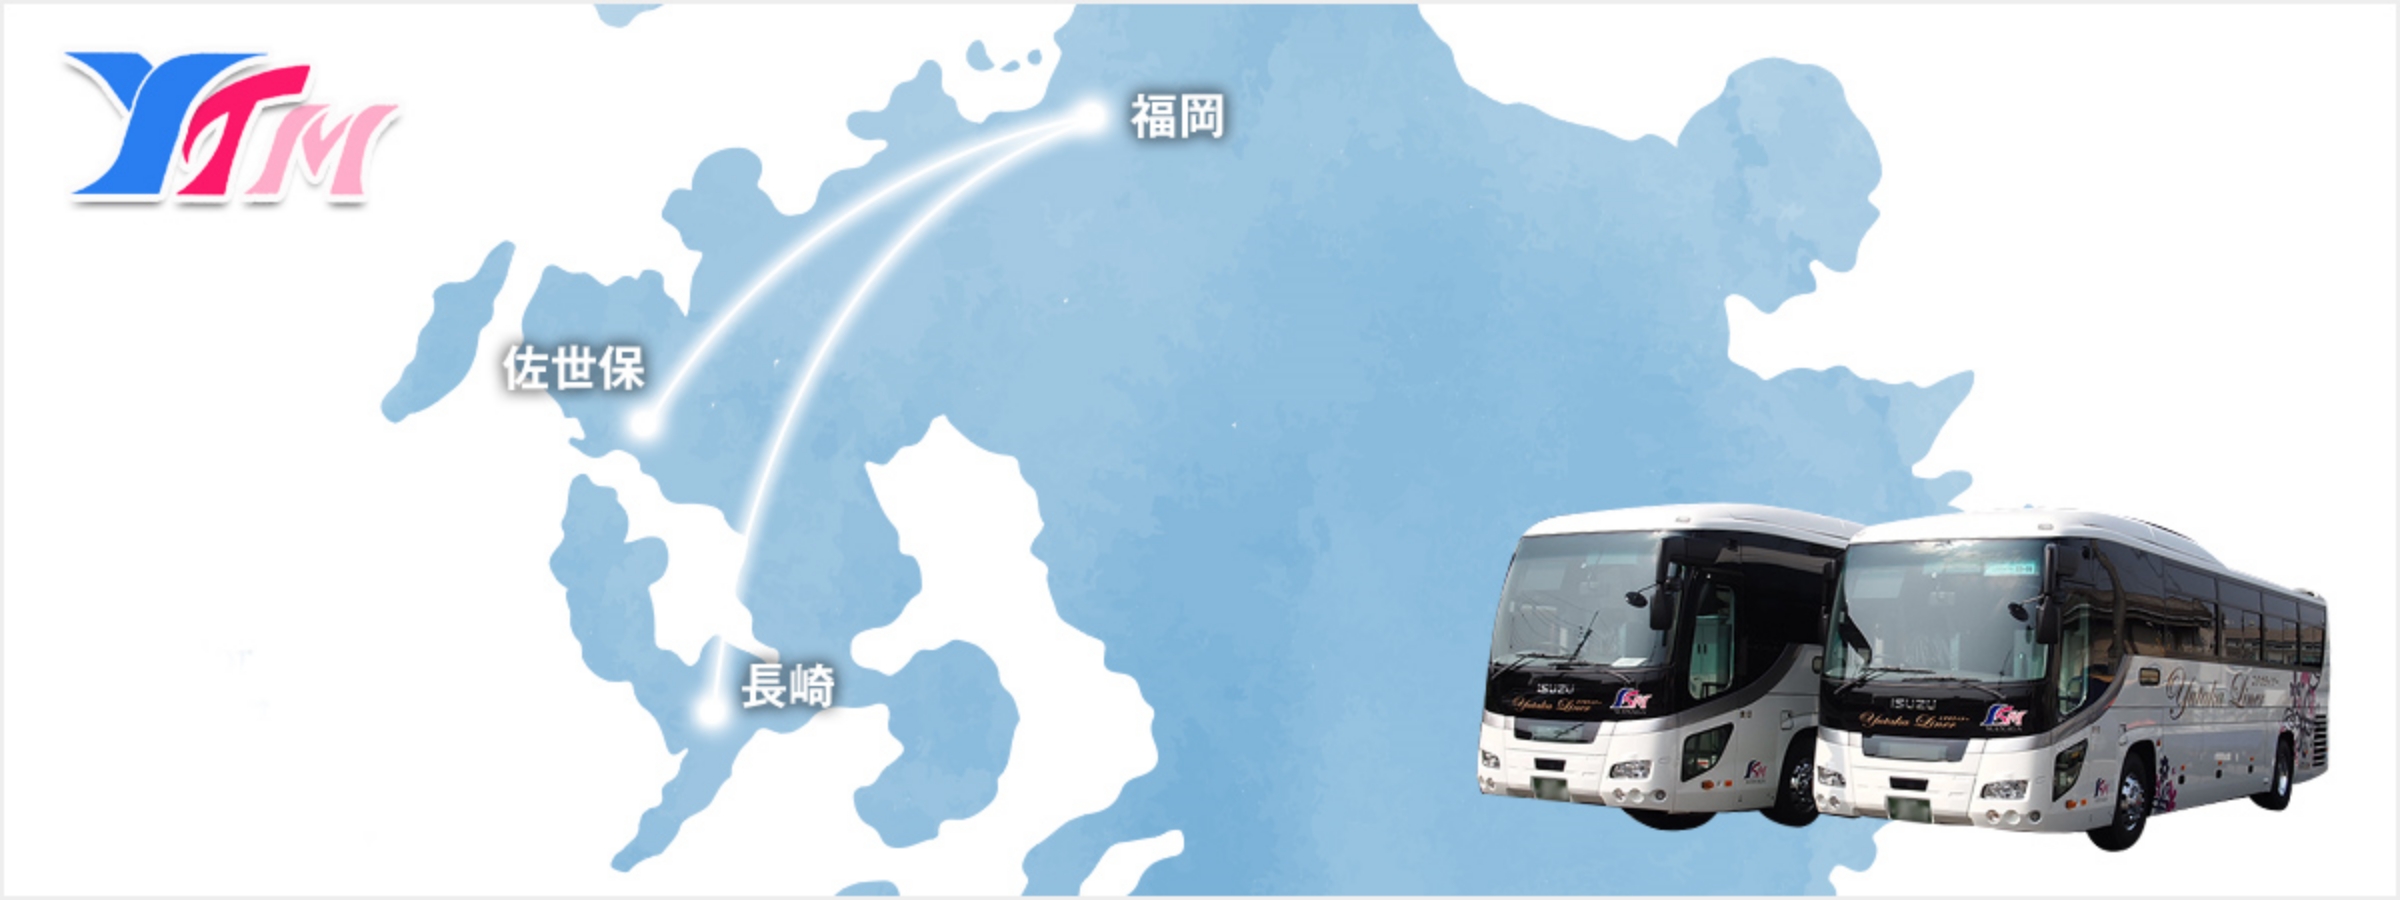 路線のご紹介 昼行バス 九州各地を結ぶ ユタカ交通株式会社